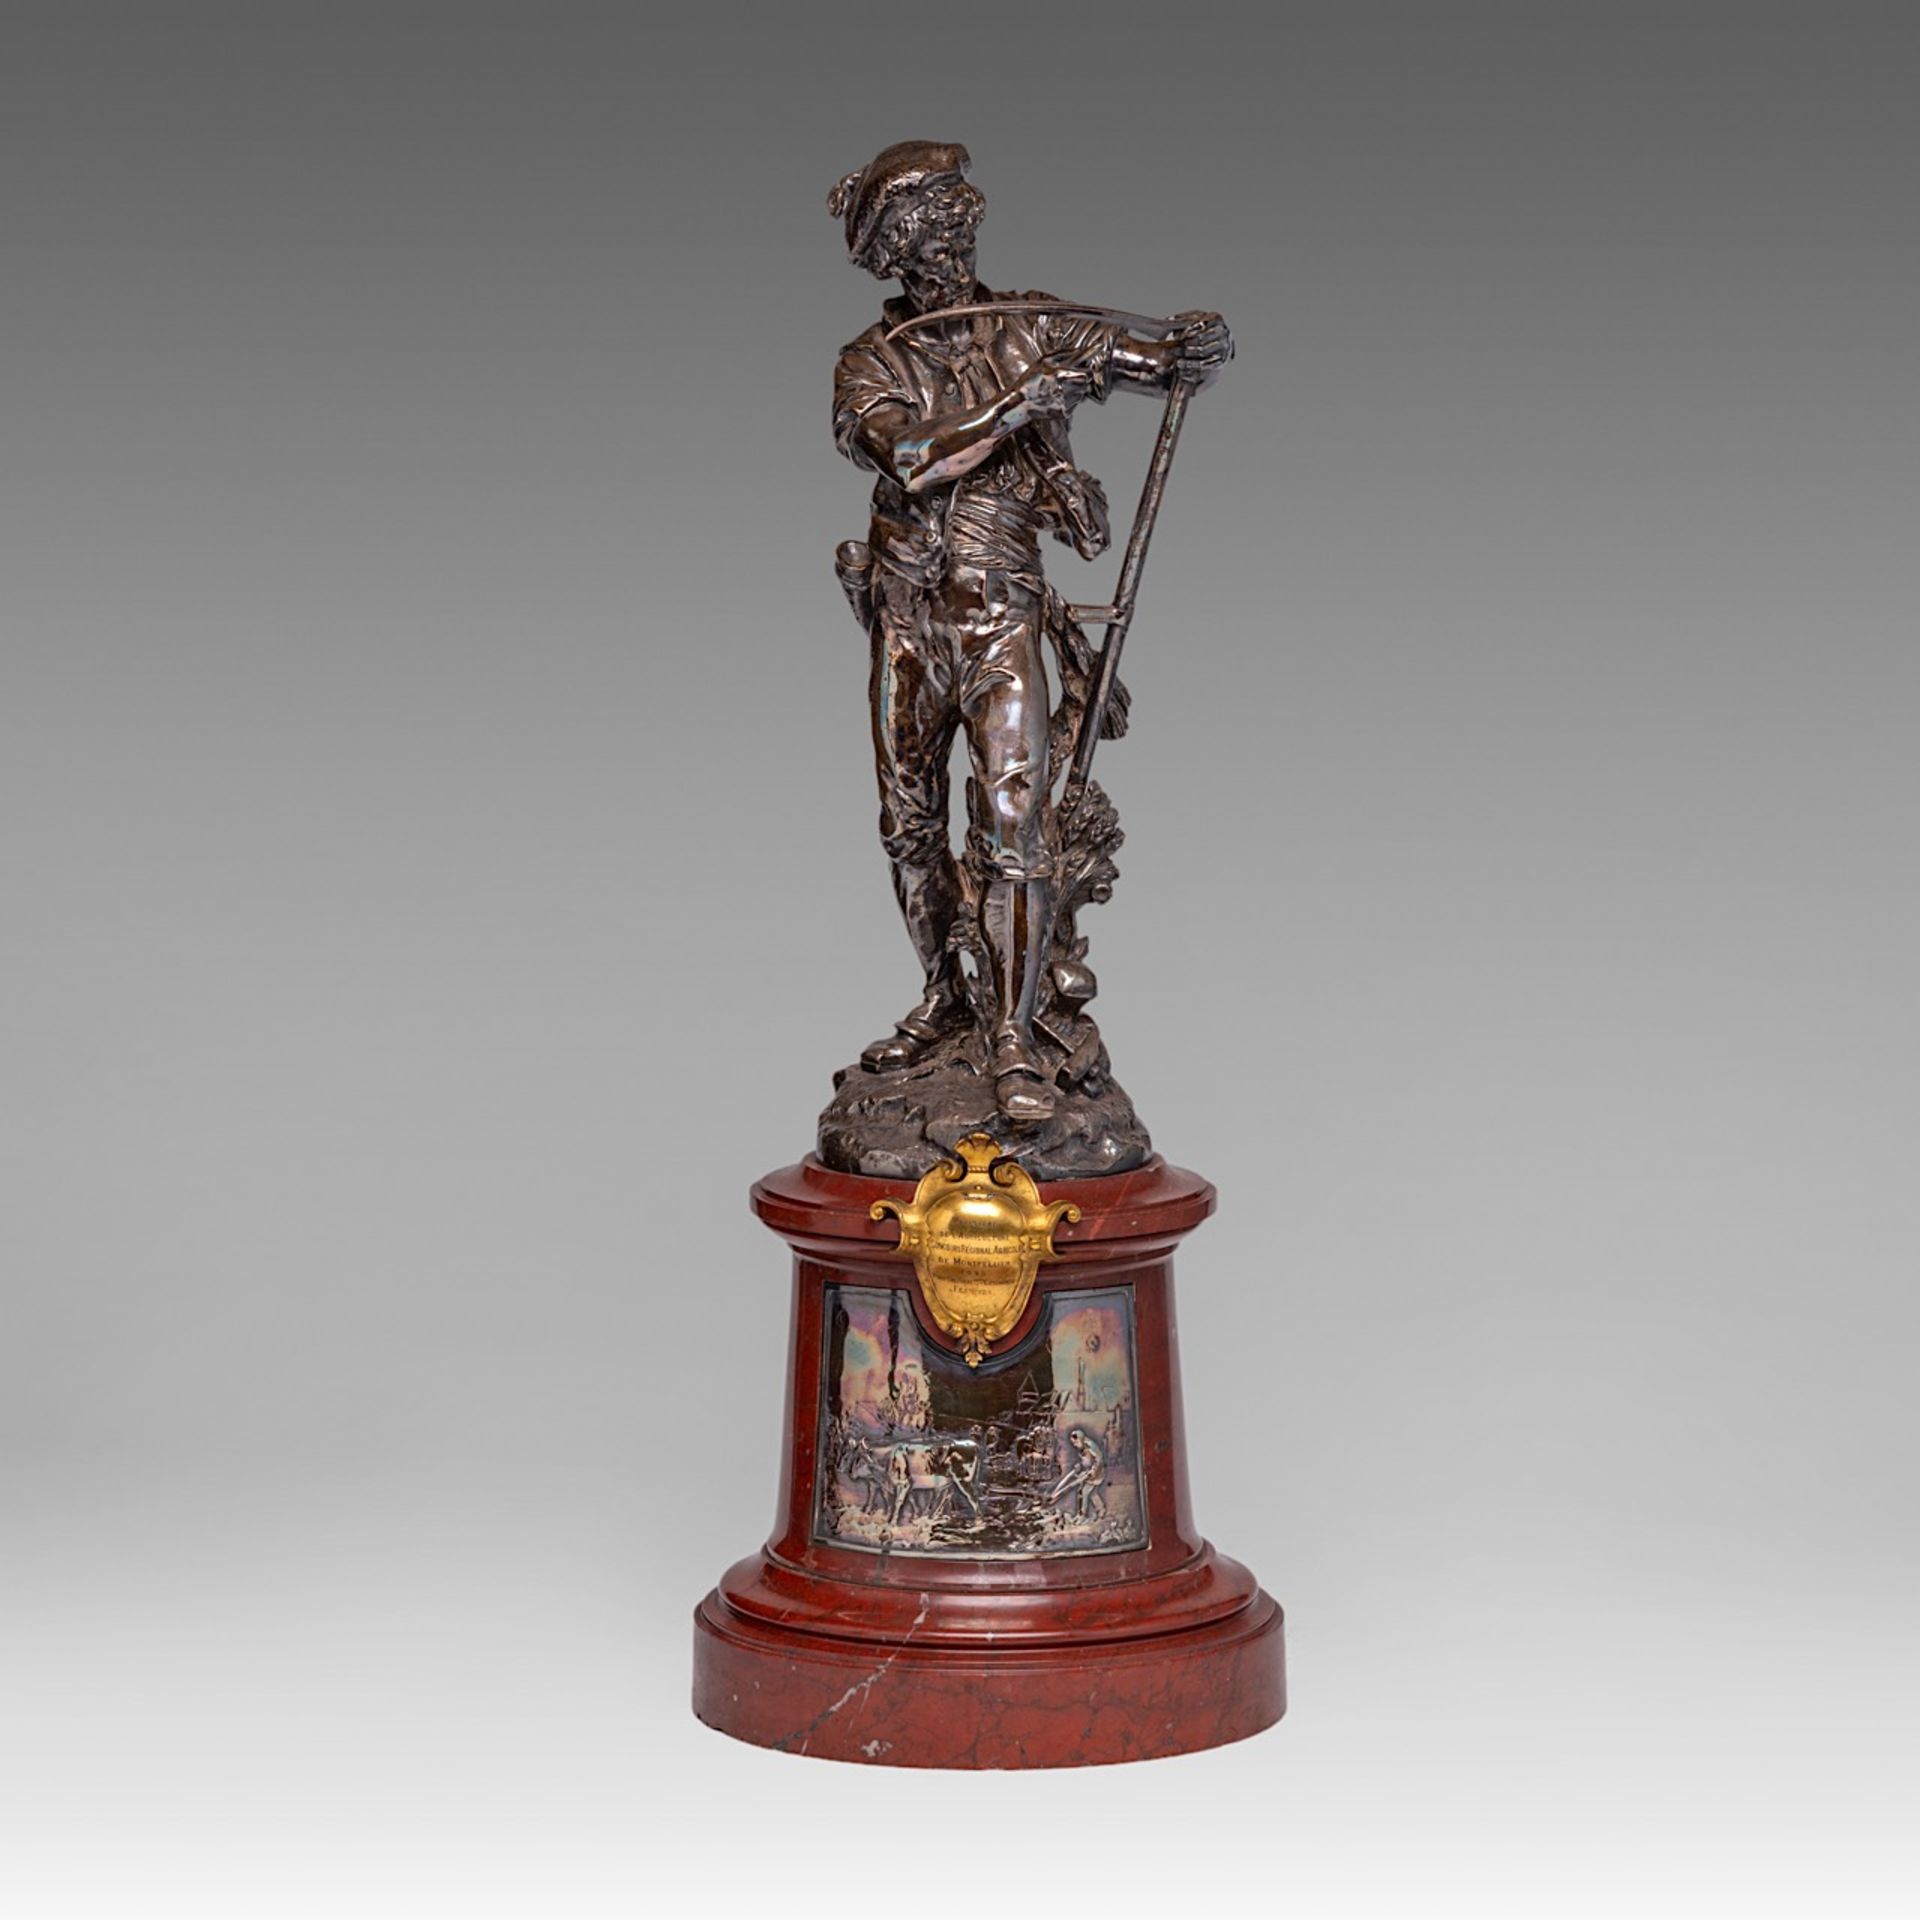 A silver-plated bronze sculpture of 'Le Faucheur', cast by Christofle & Cie, 1885, H 63 cm